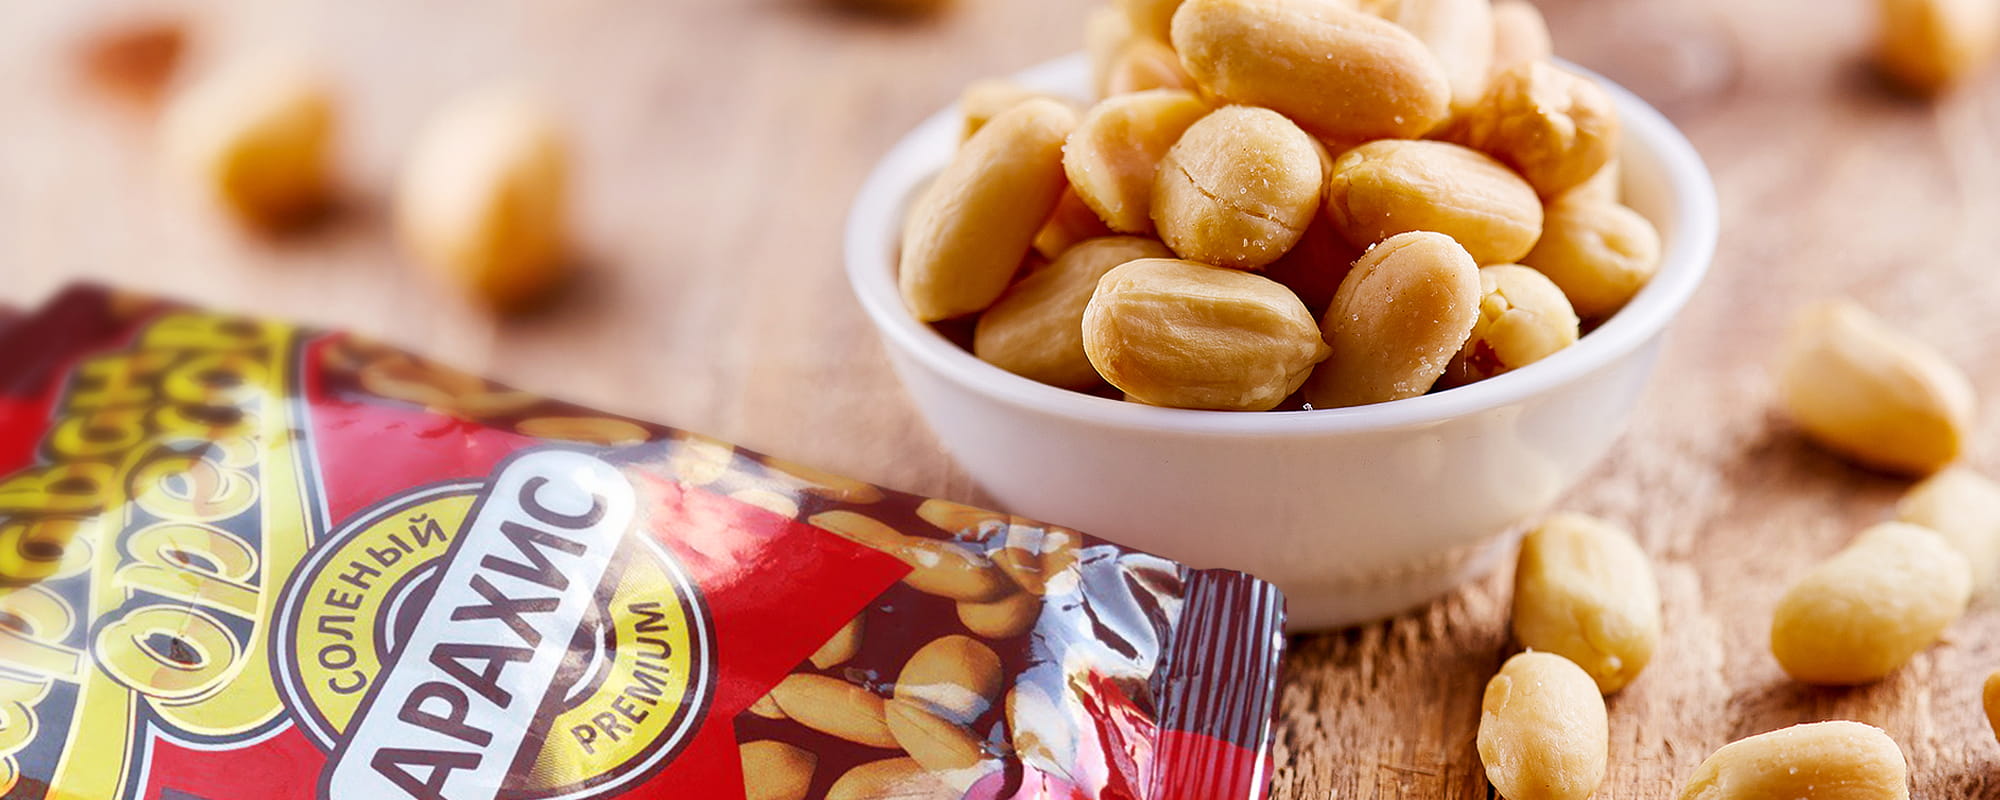 Небольшая порция арахиса в день помогает нашему организму бороться с воспалениями